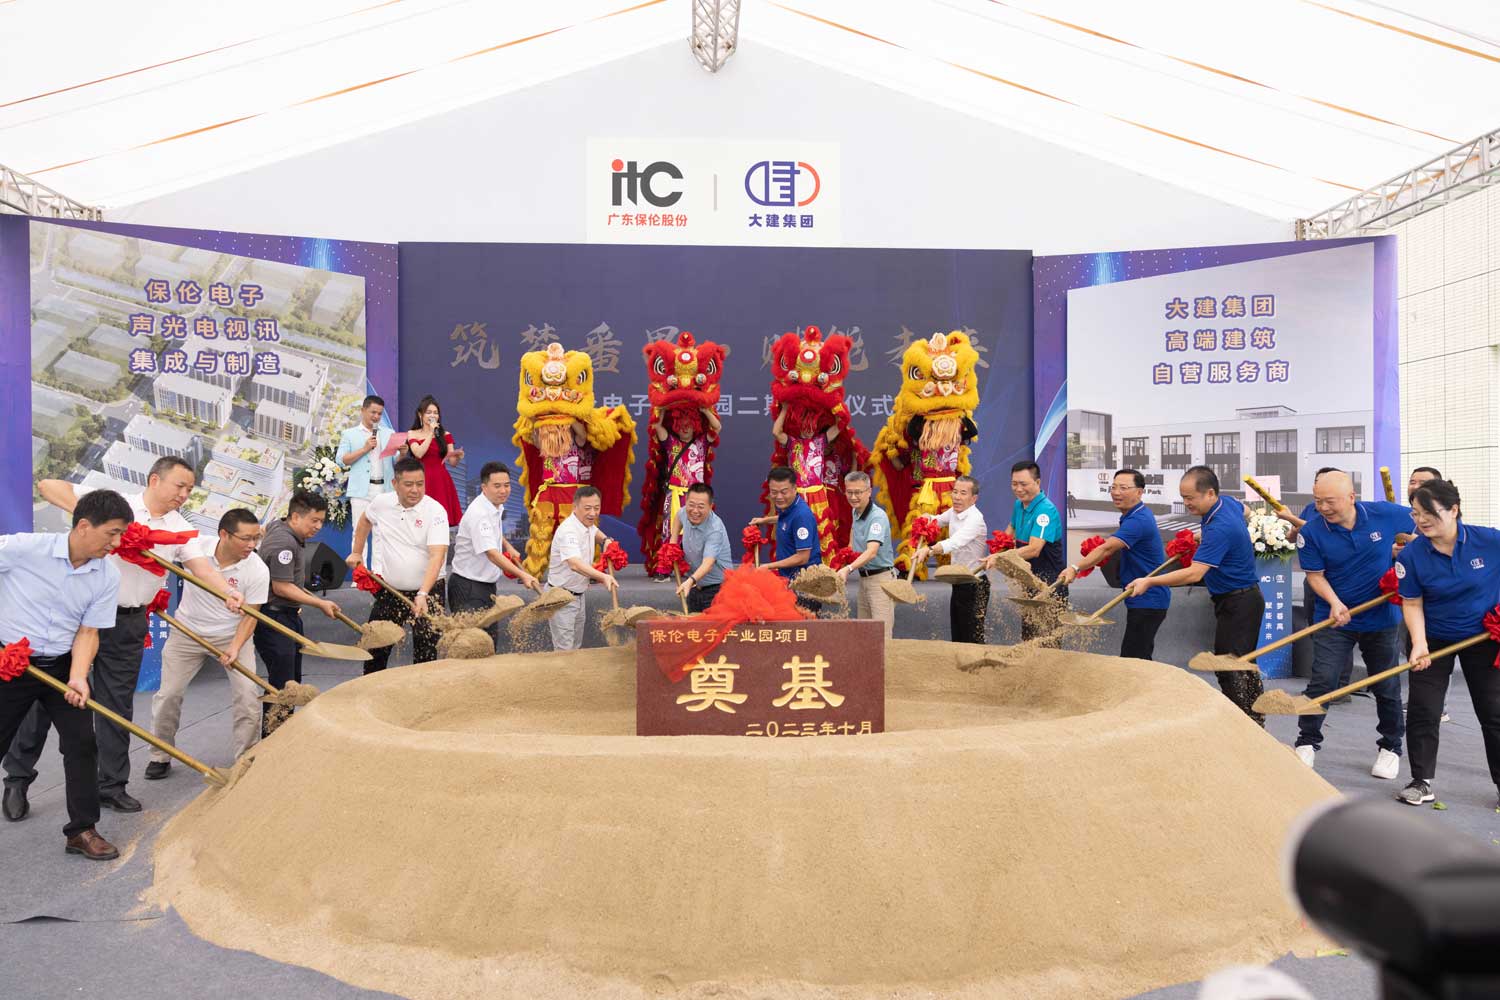 Отличные новости! Поздравляем с успешной церемонией закладки фундамента второй очереди электронного промышленного парка ITC Бао Лунь!